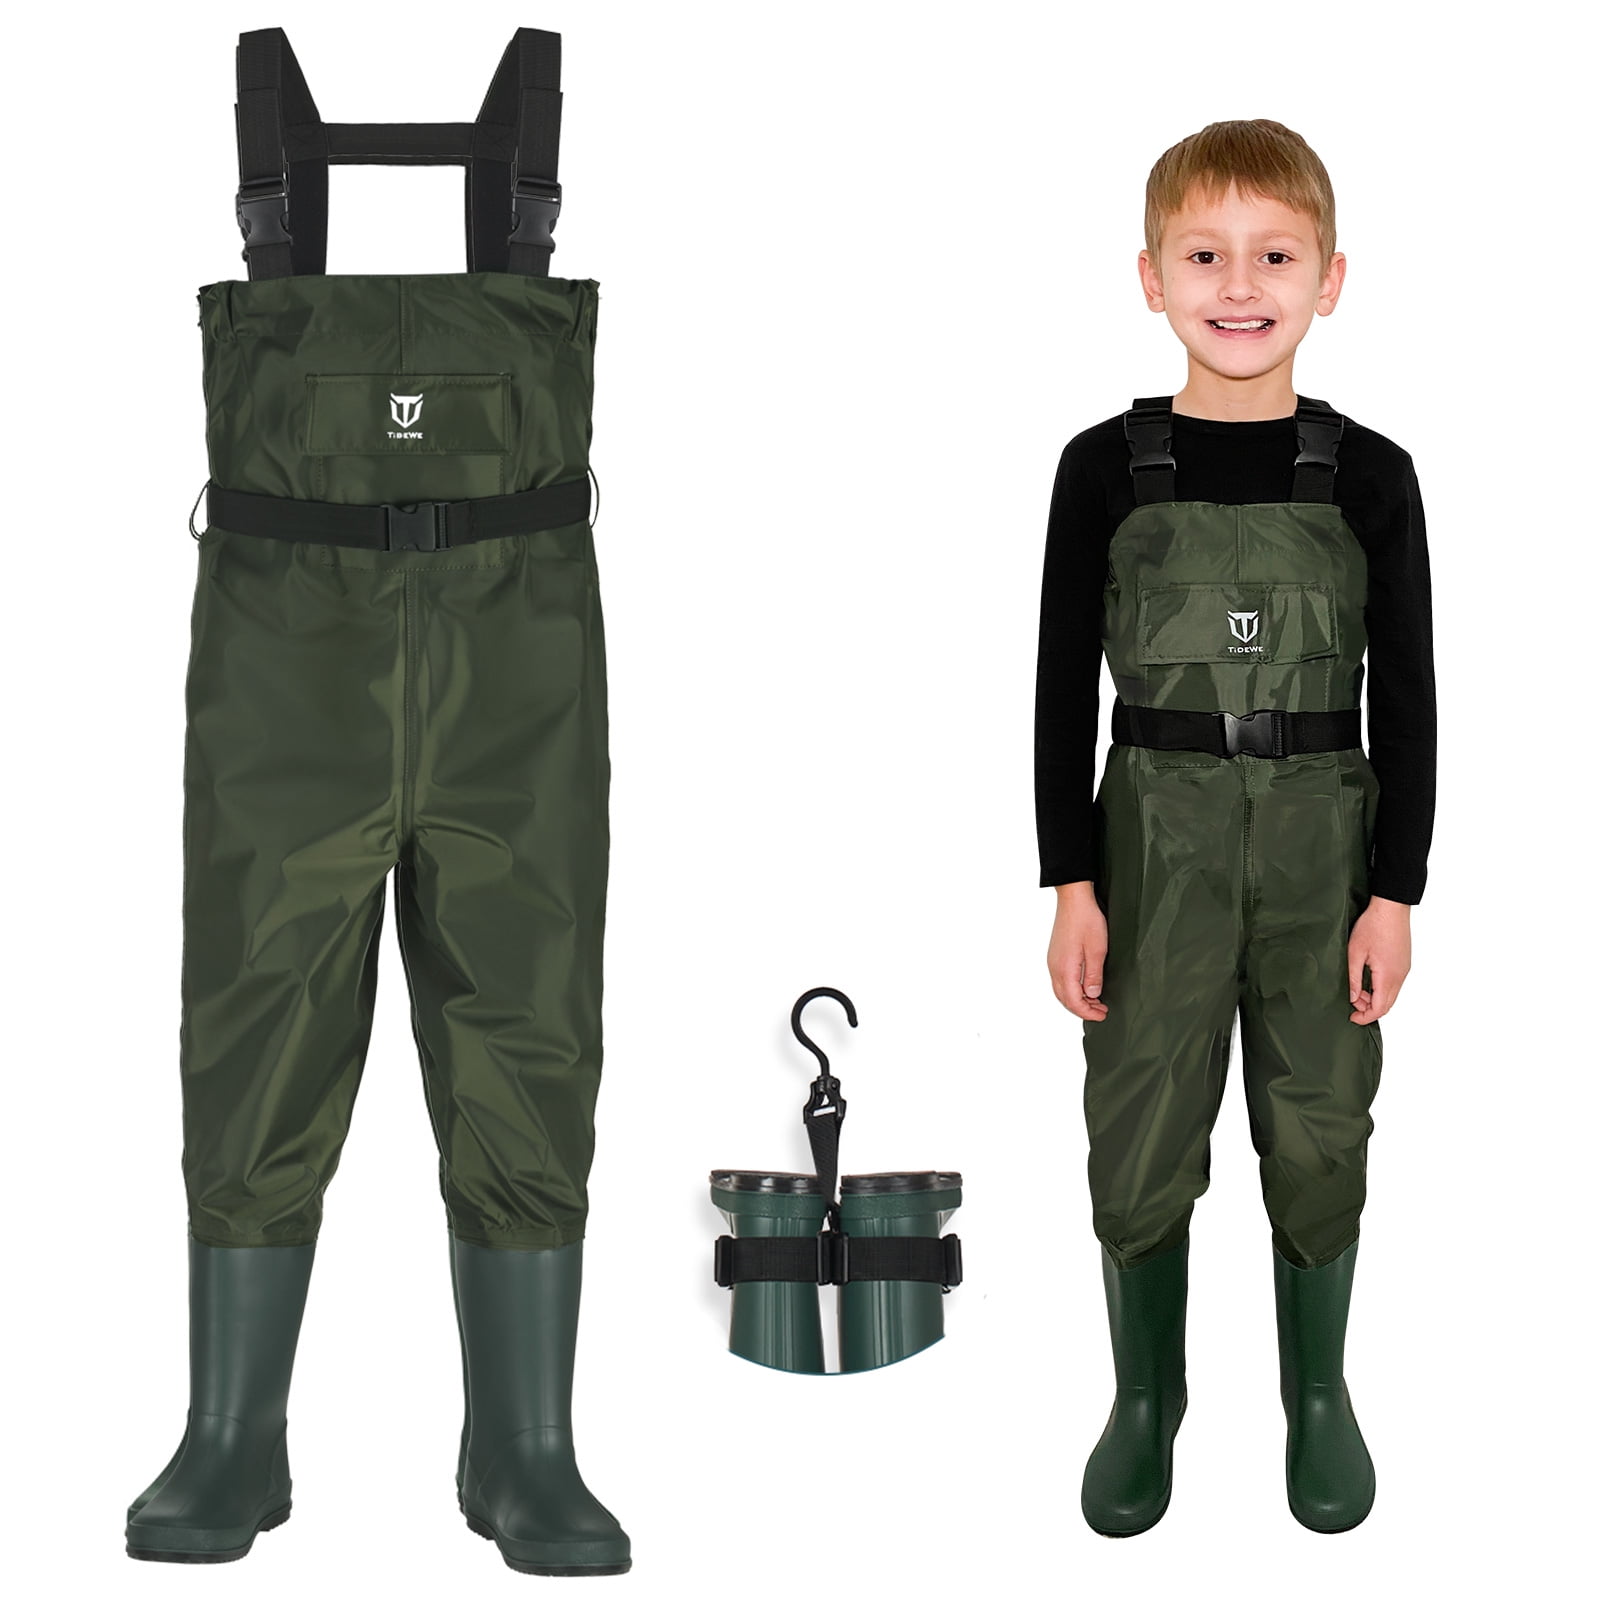 Kids Chlidren Chest Waders PVC Watertight Pants Waders Ourdoor Play Fishing Wear 